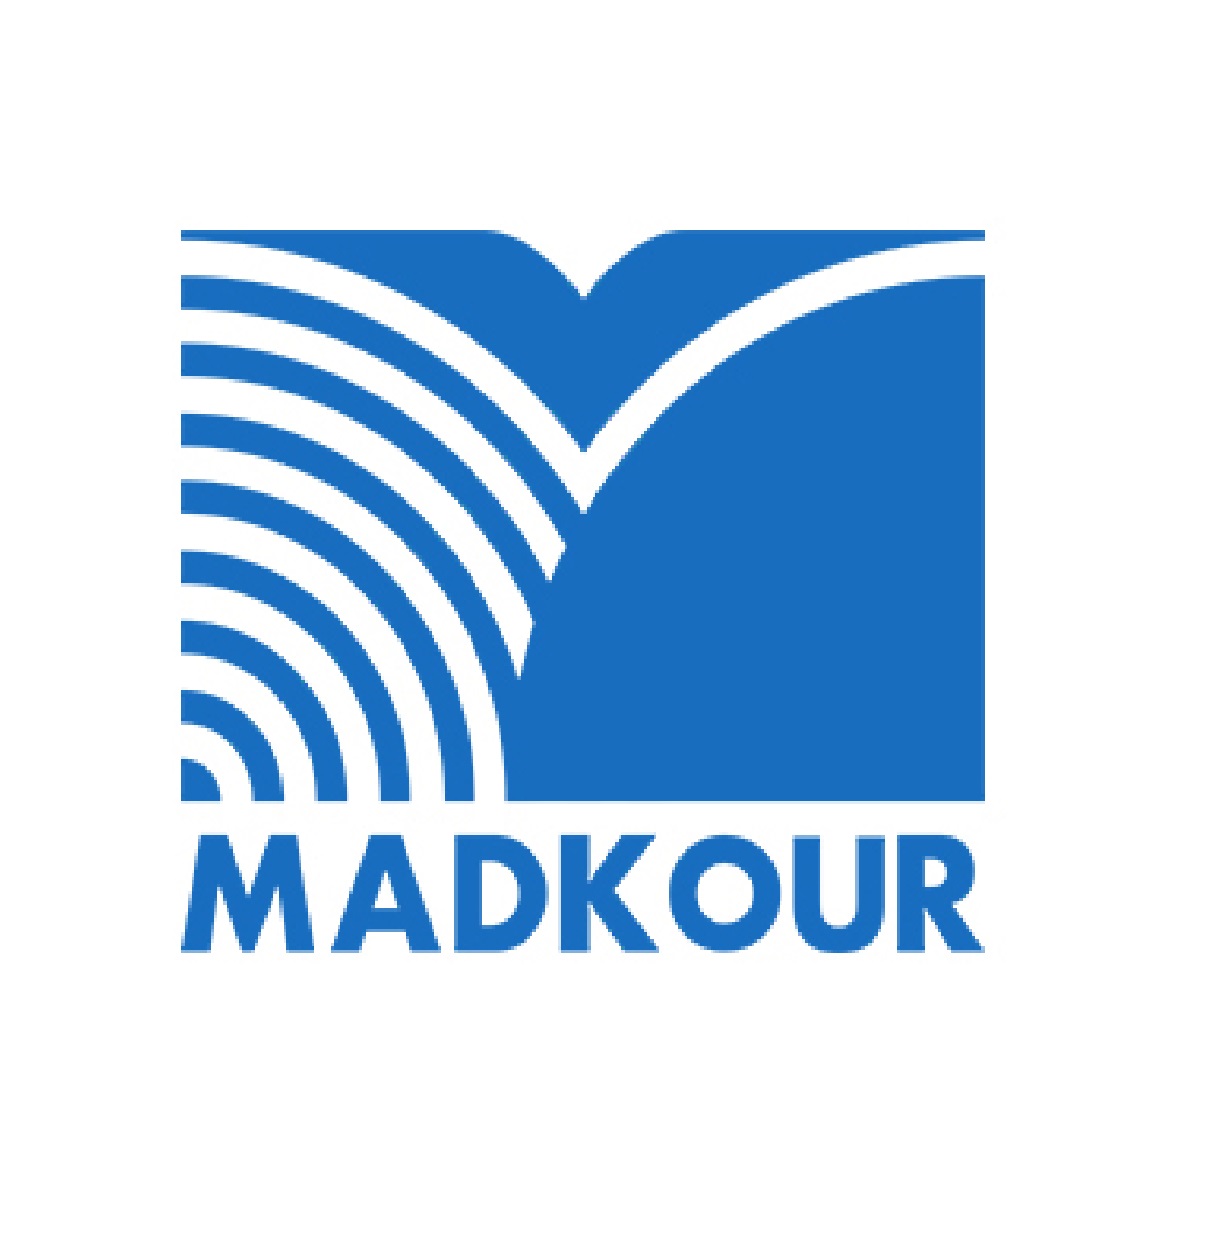 Madkour